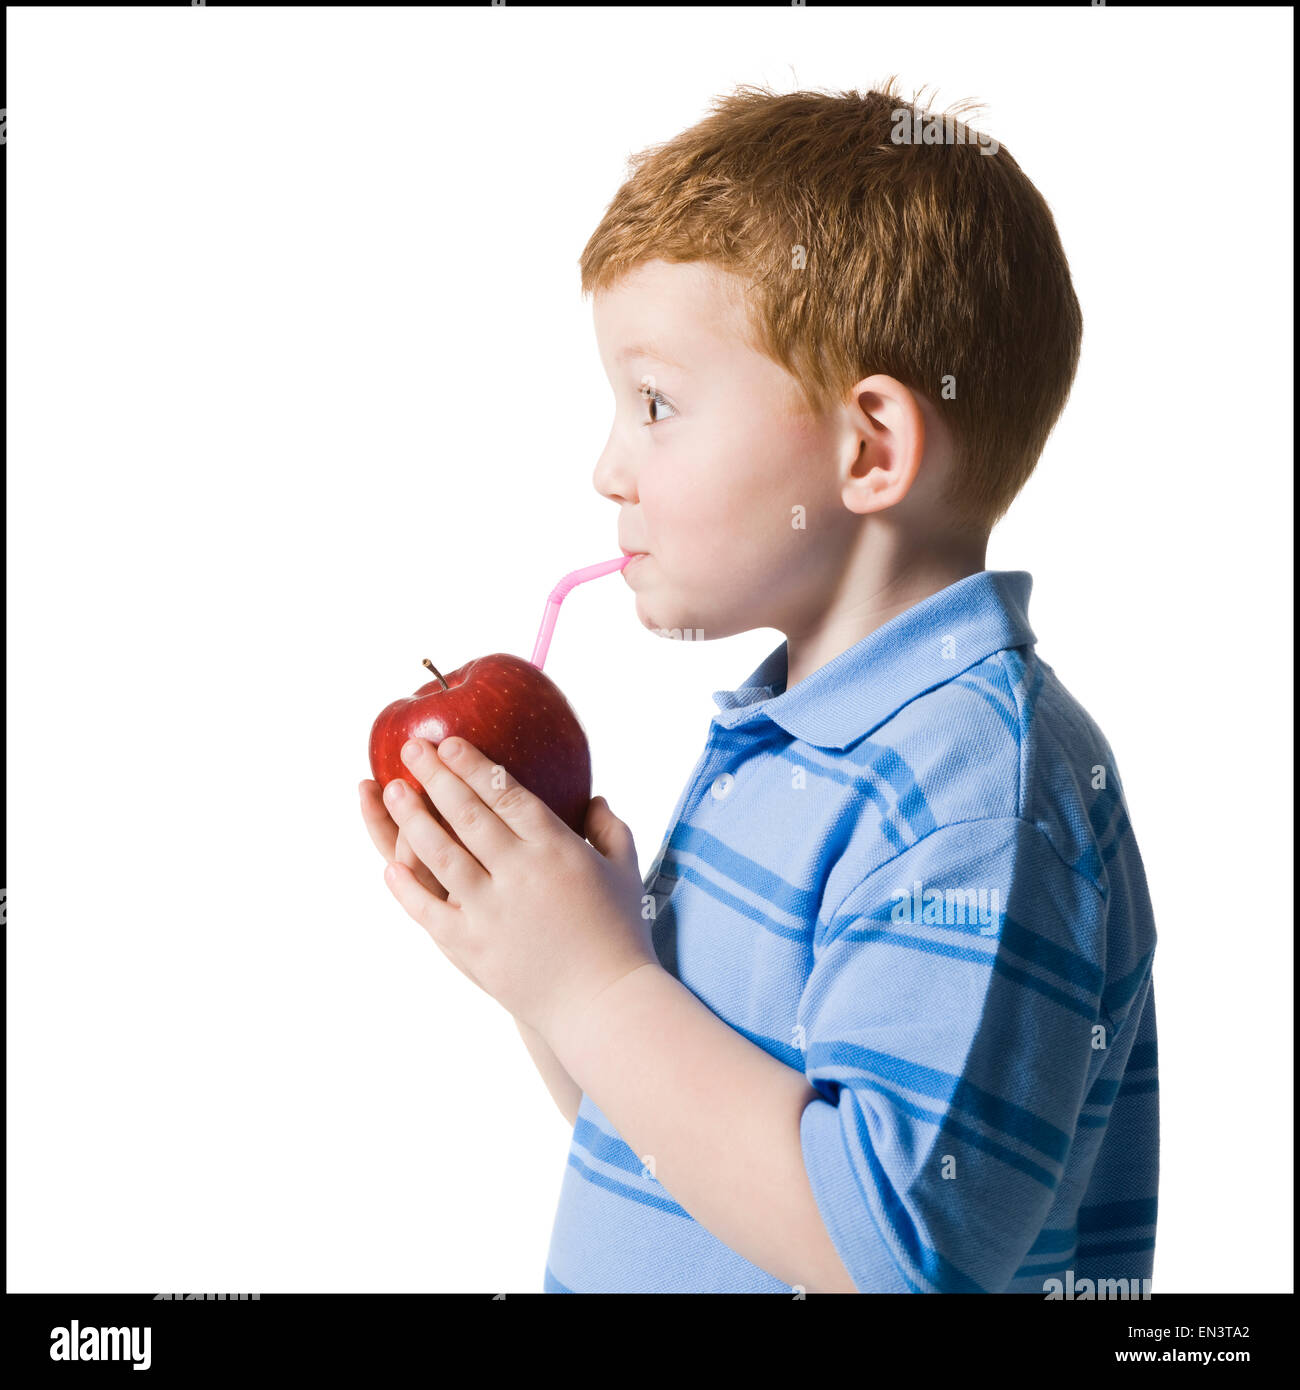 Junge, einen Apfel mit einem Strohhalm trinken Stockfotografie - Alamy